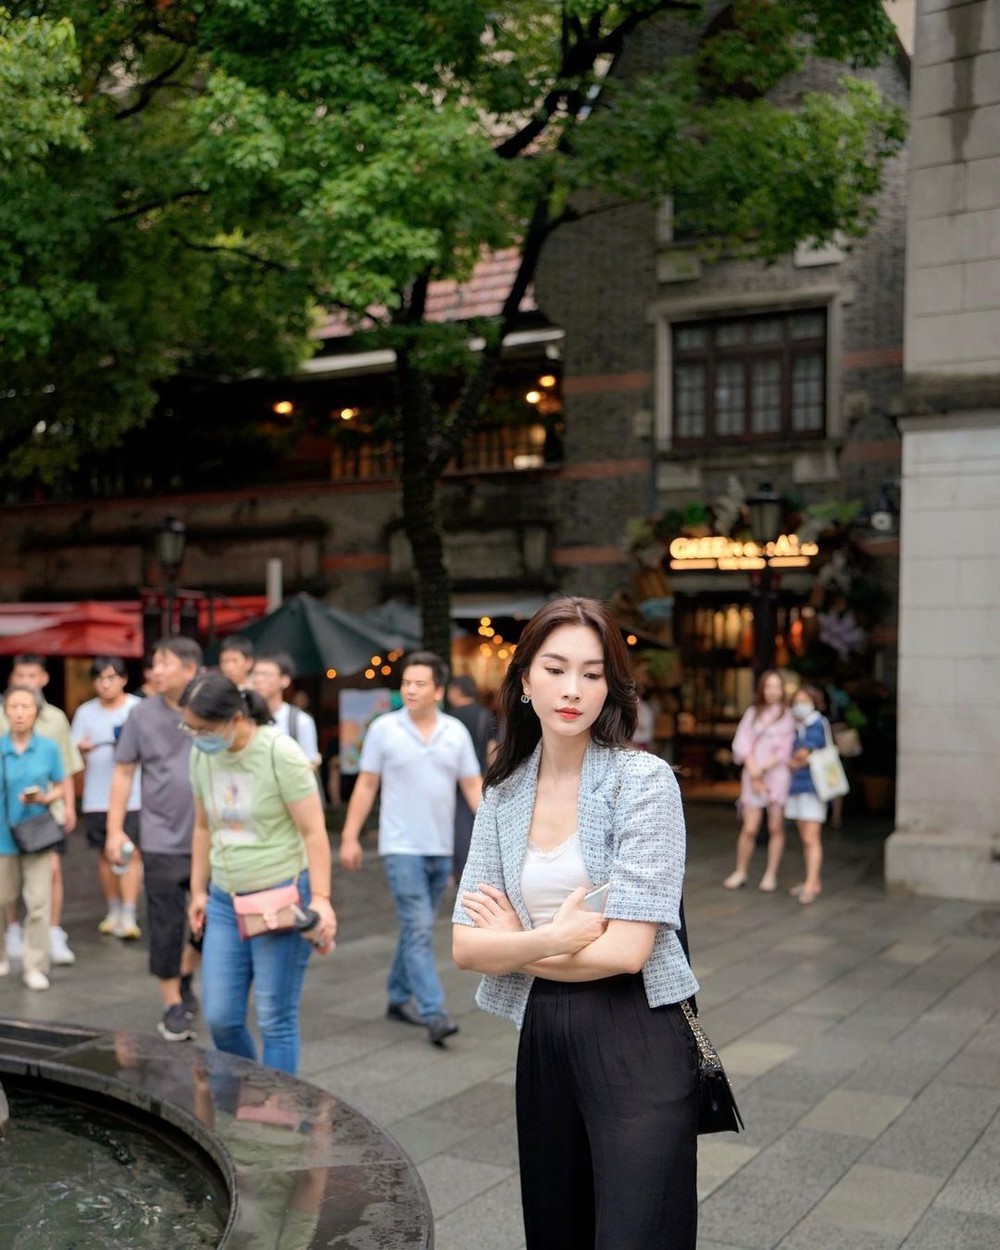 Hoa hậu Đặng Thu Thảo tuyên bố xoá thẳng tay những bình luận tiêu cực trên trang cá nhân - Ảnh 2.